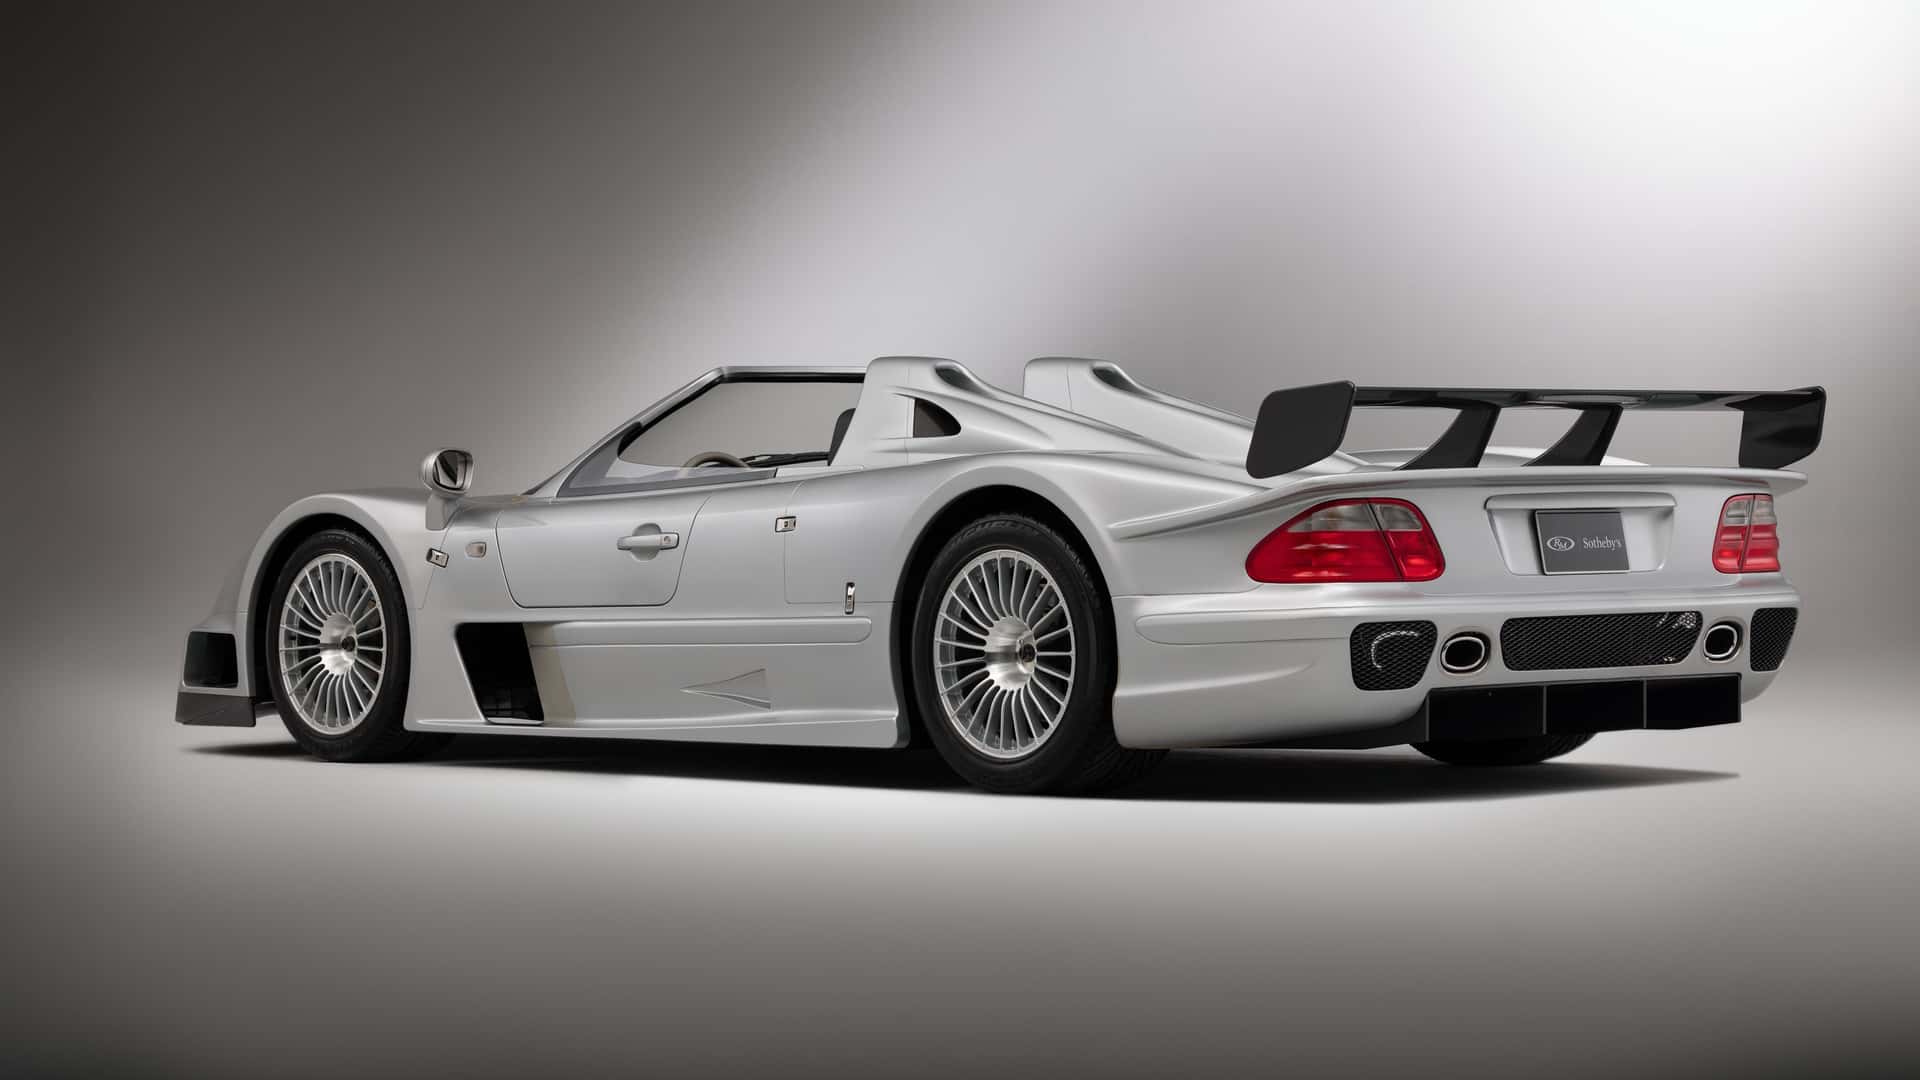 Xe đua Mercedes CLK GTR Roadster 2002 siêu hiếm, lăn bánh được 167 km sau 21 năm, đấu giá 10,2 triệu USD